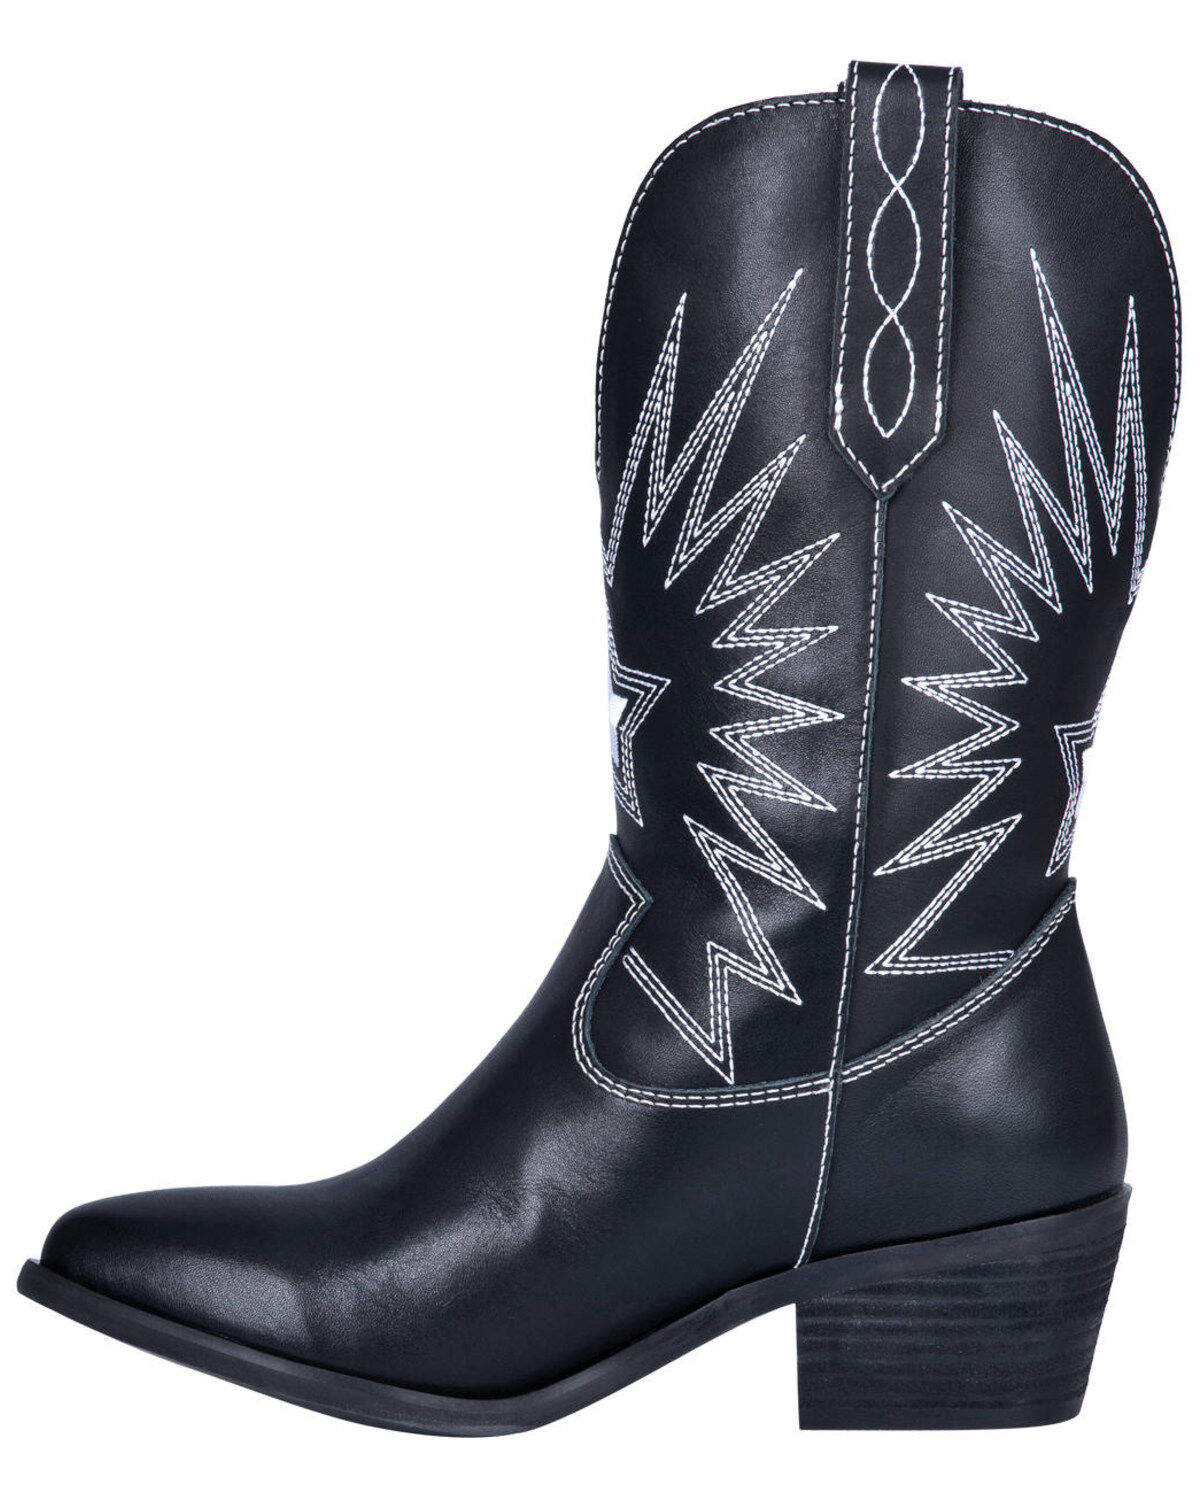 rockstar boots